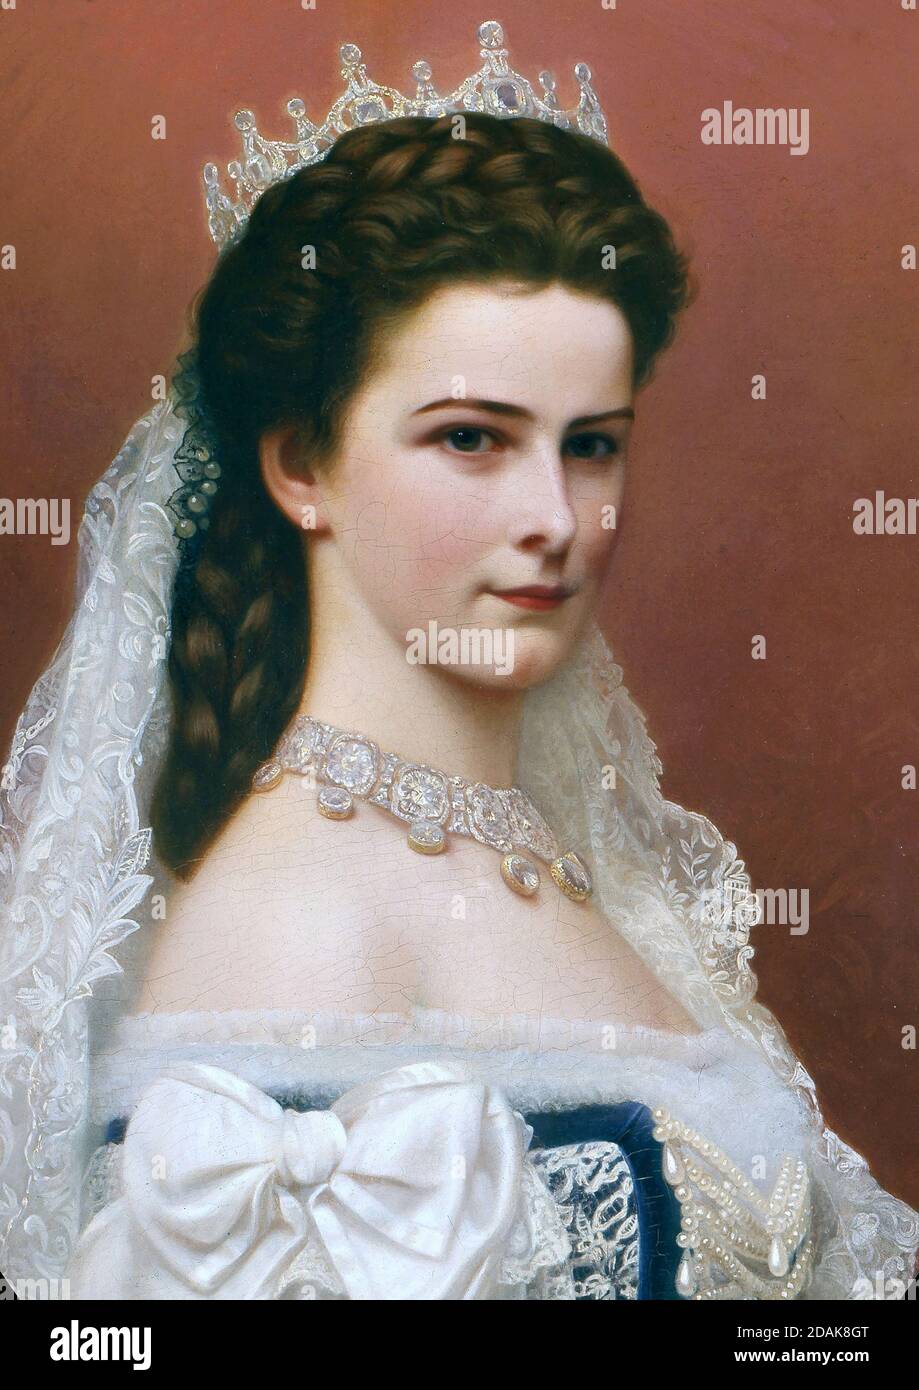 Ritratto dell'imperatrice Elisabetta d'Austria, conosciuta come Sisi - dopo Georg Raab Foto Stock